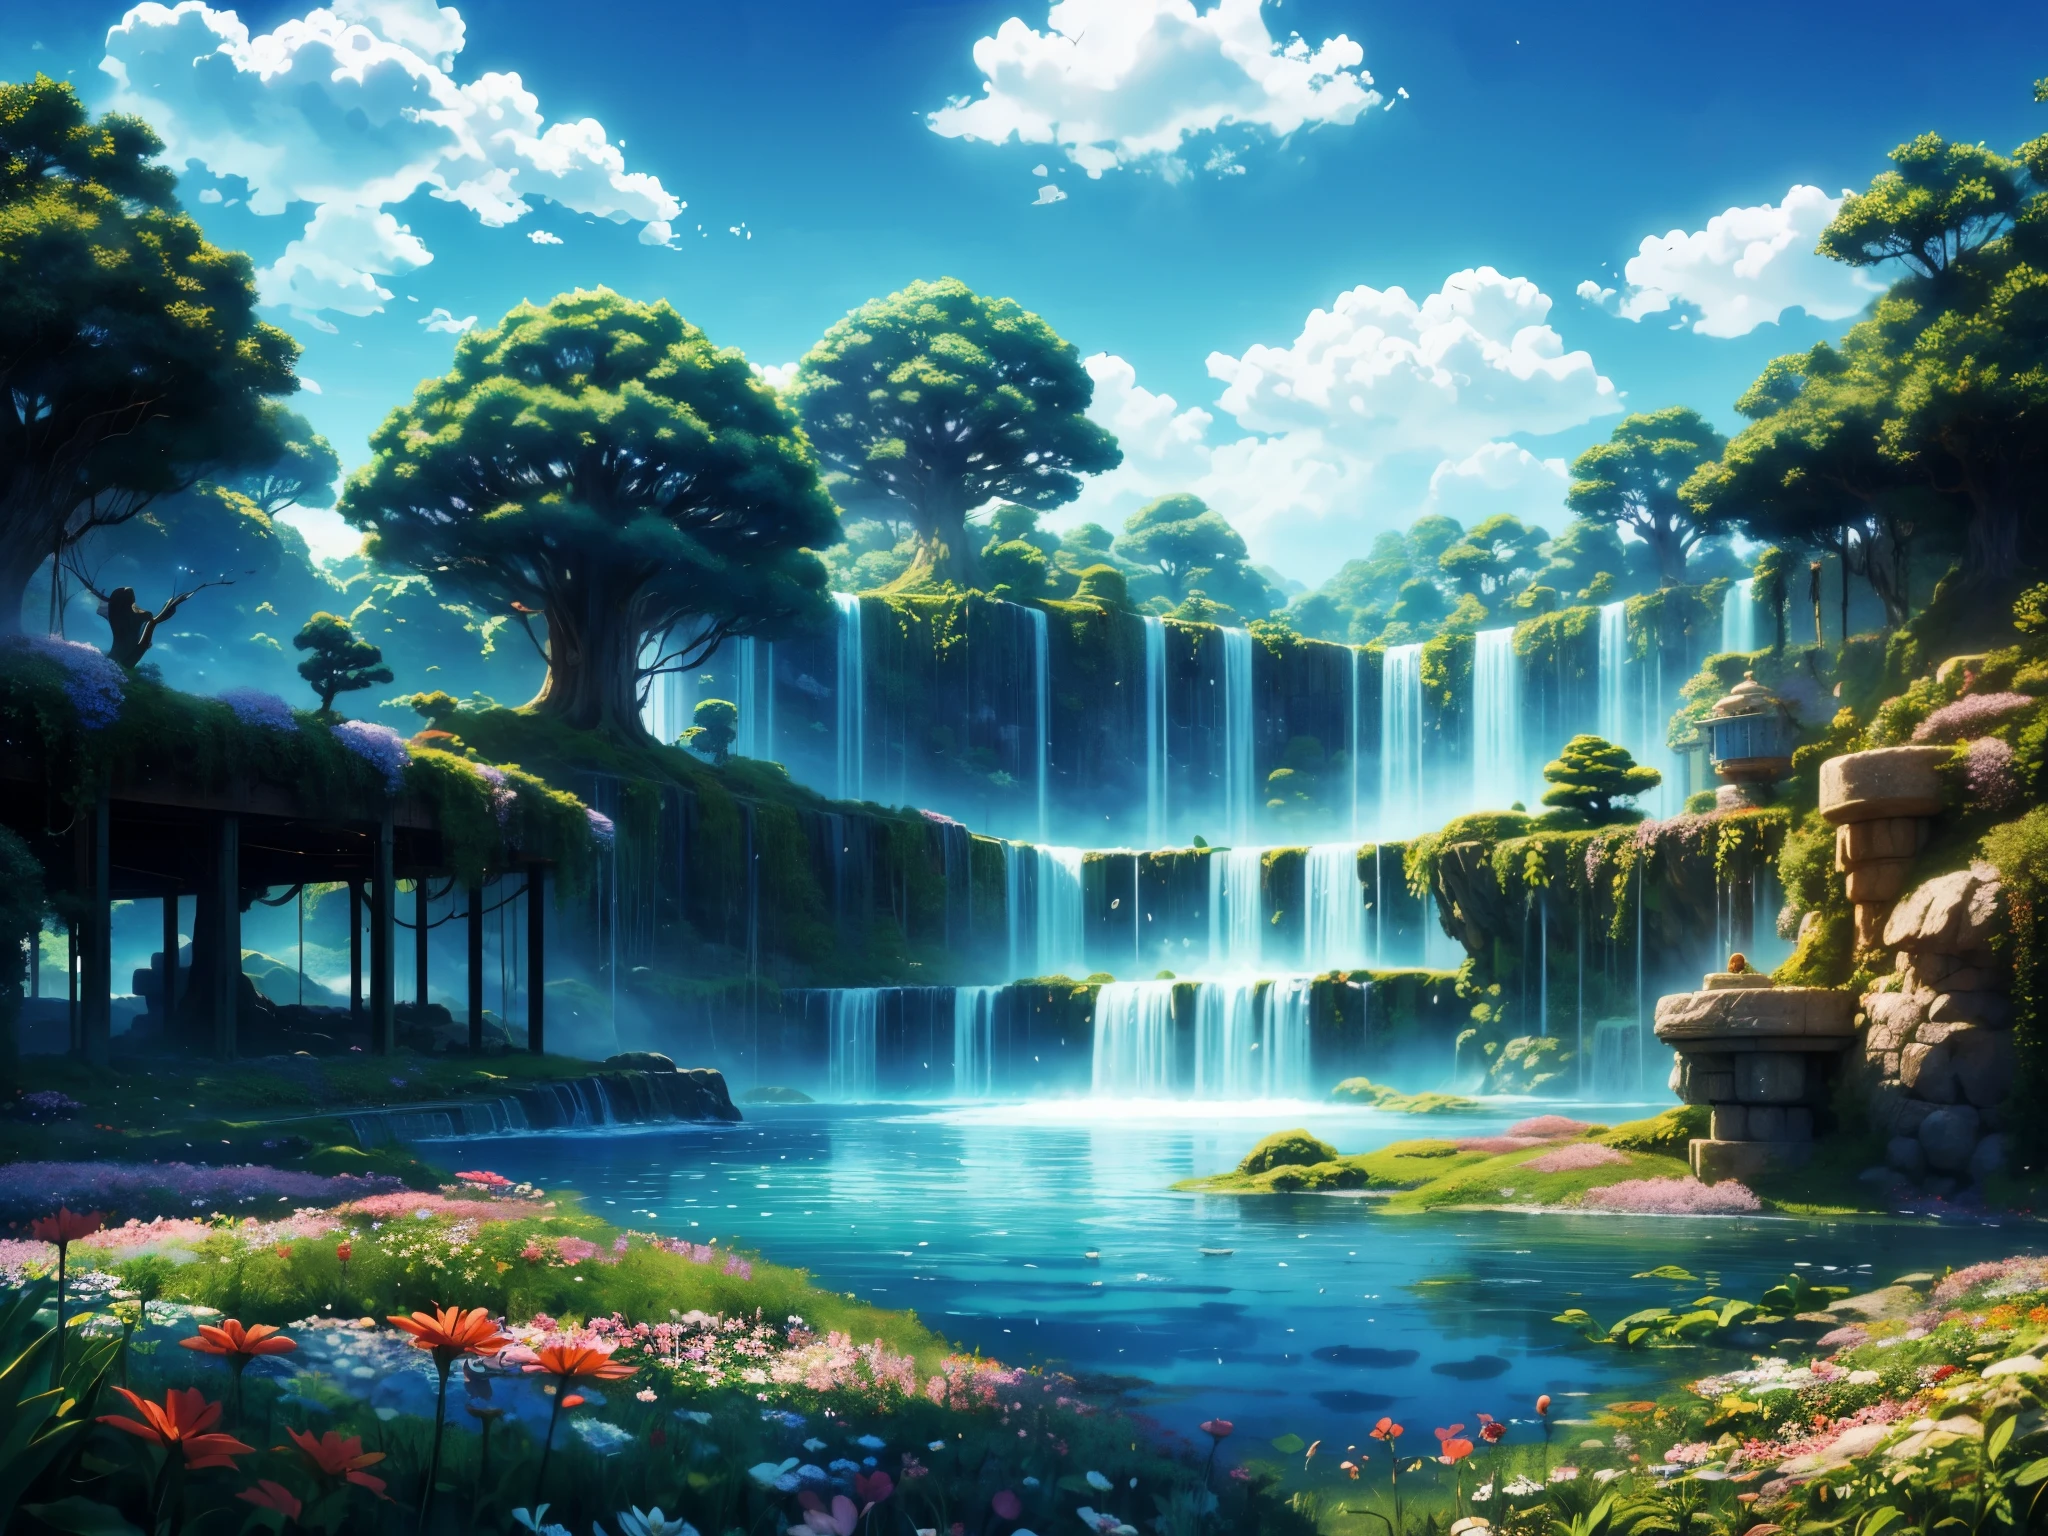 Captura de tela do DVD do filme do Studio Ghibli, (lindo jardim de arbustos:1.4), Nuvens no céu azul, desenhado por Hayao Miyazaki, retro anime